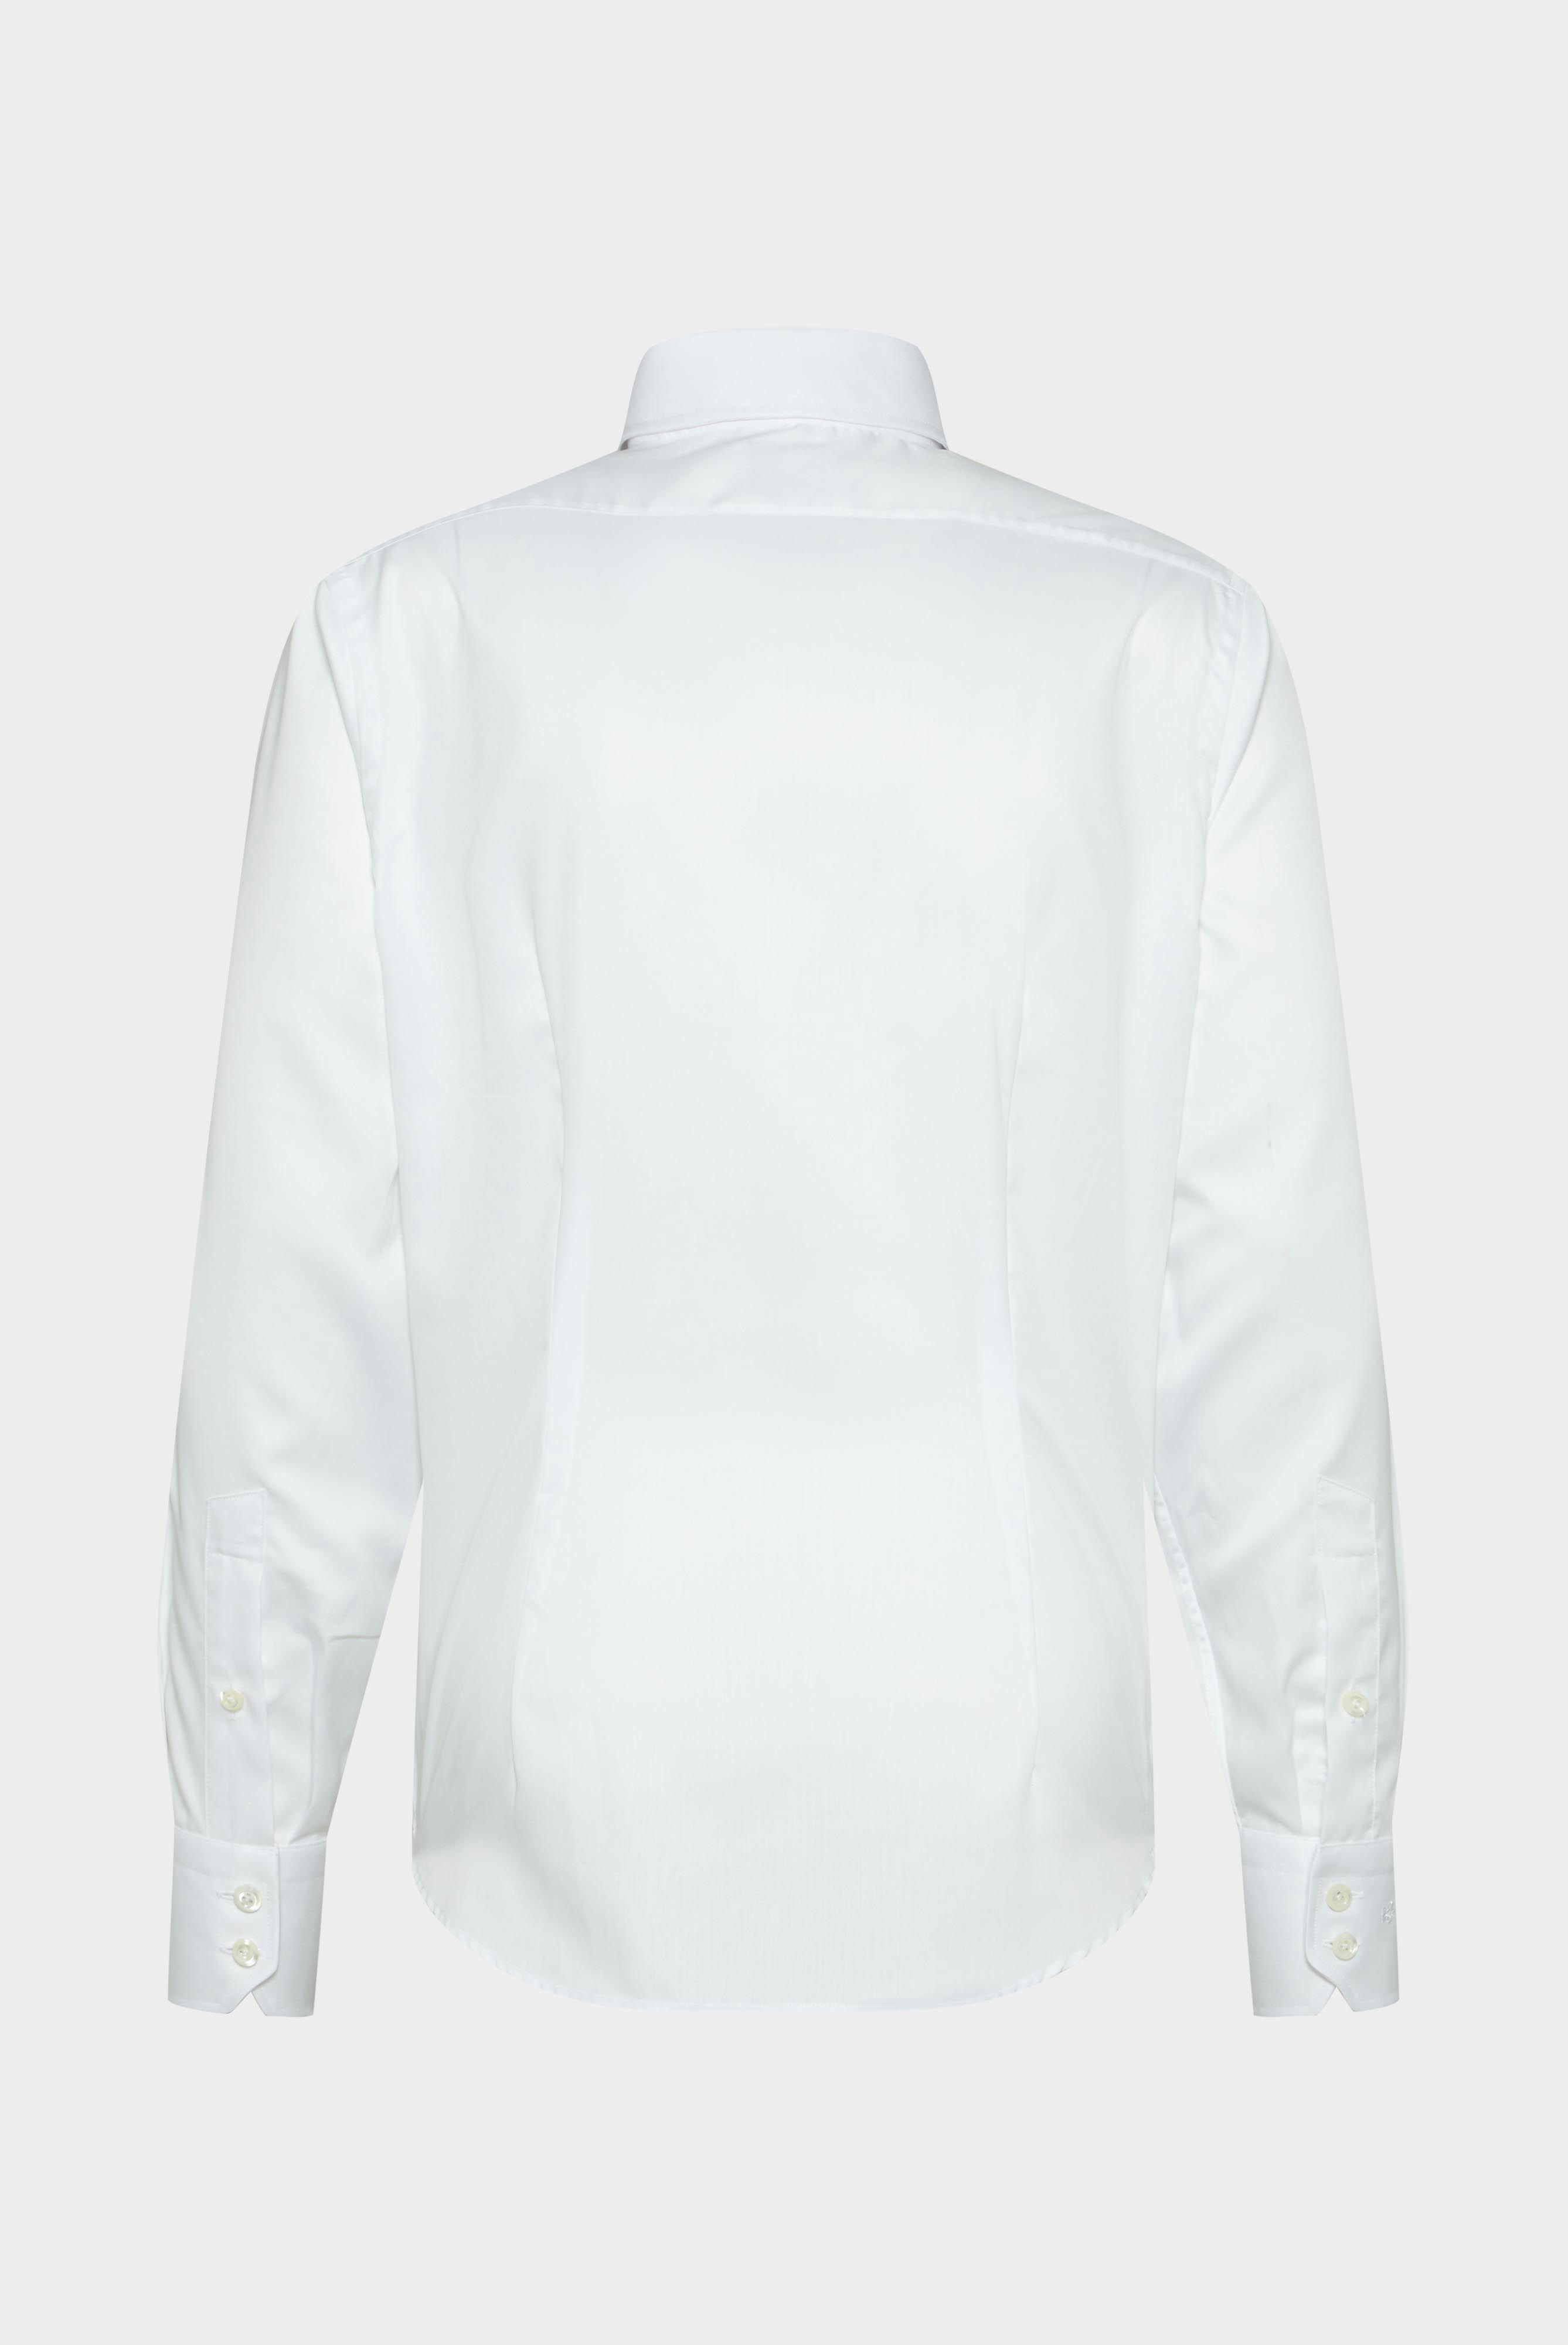 Bügelleichte Hemden+Bügelfreies Twill Hemd Tailor Fit+20.2020.BQ.132241.000.37